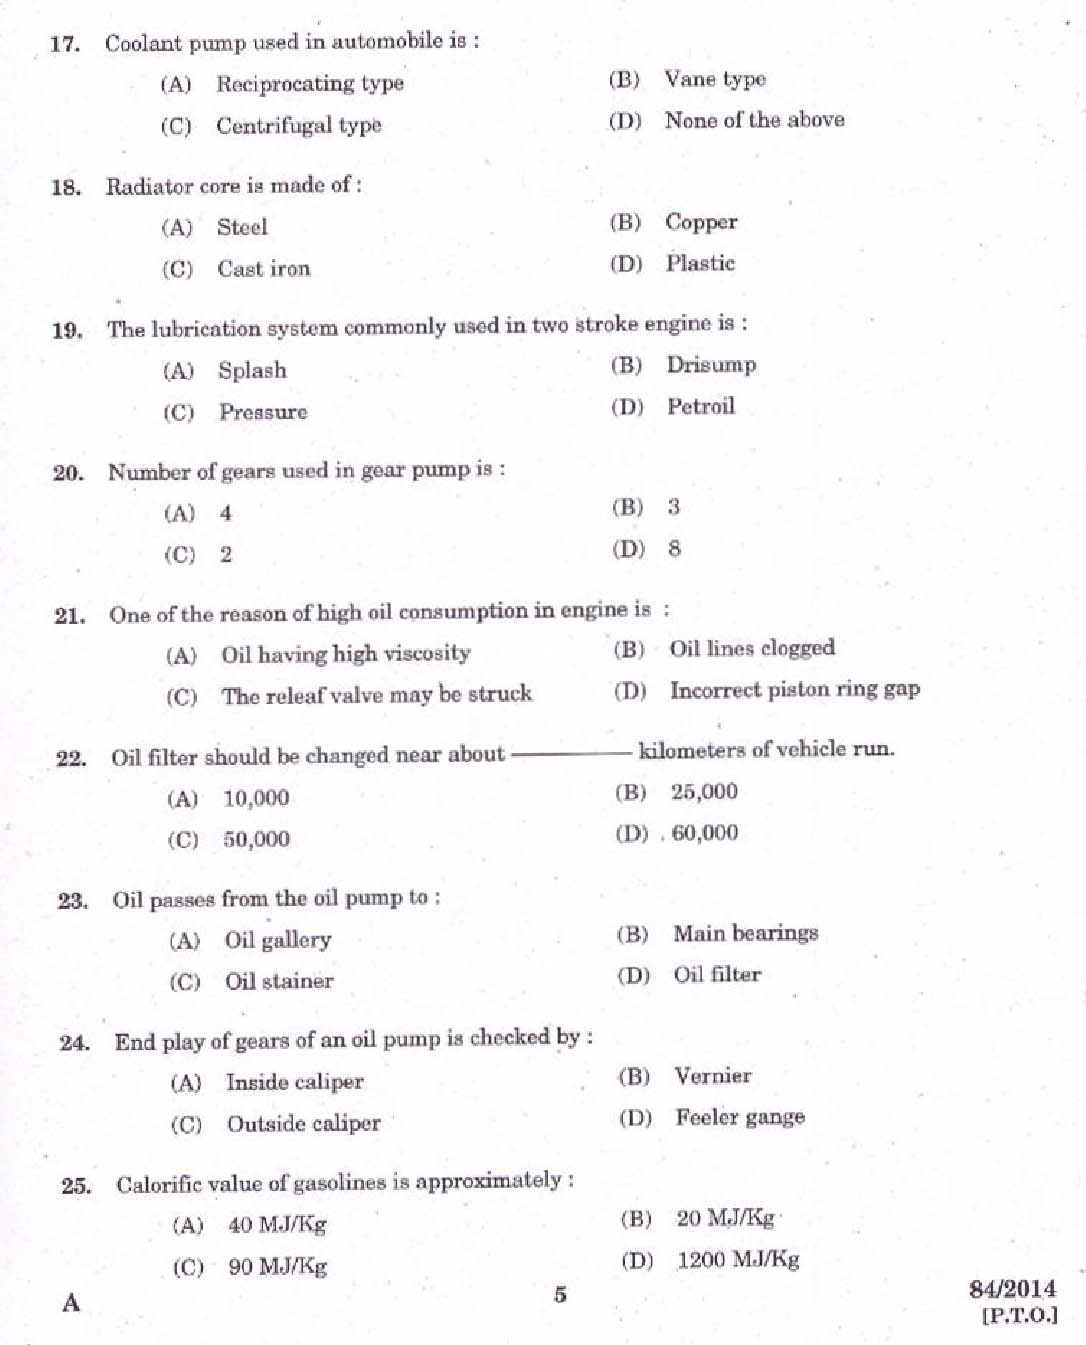 Kerala PSC Junior Instructor Exam 2014 Question Paper Code 842014 3